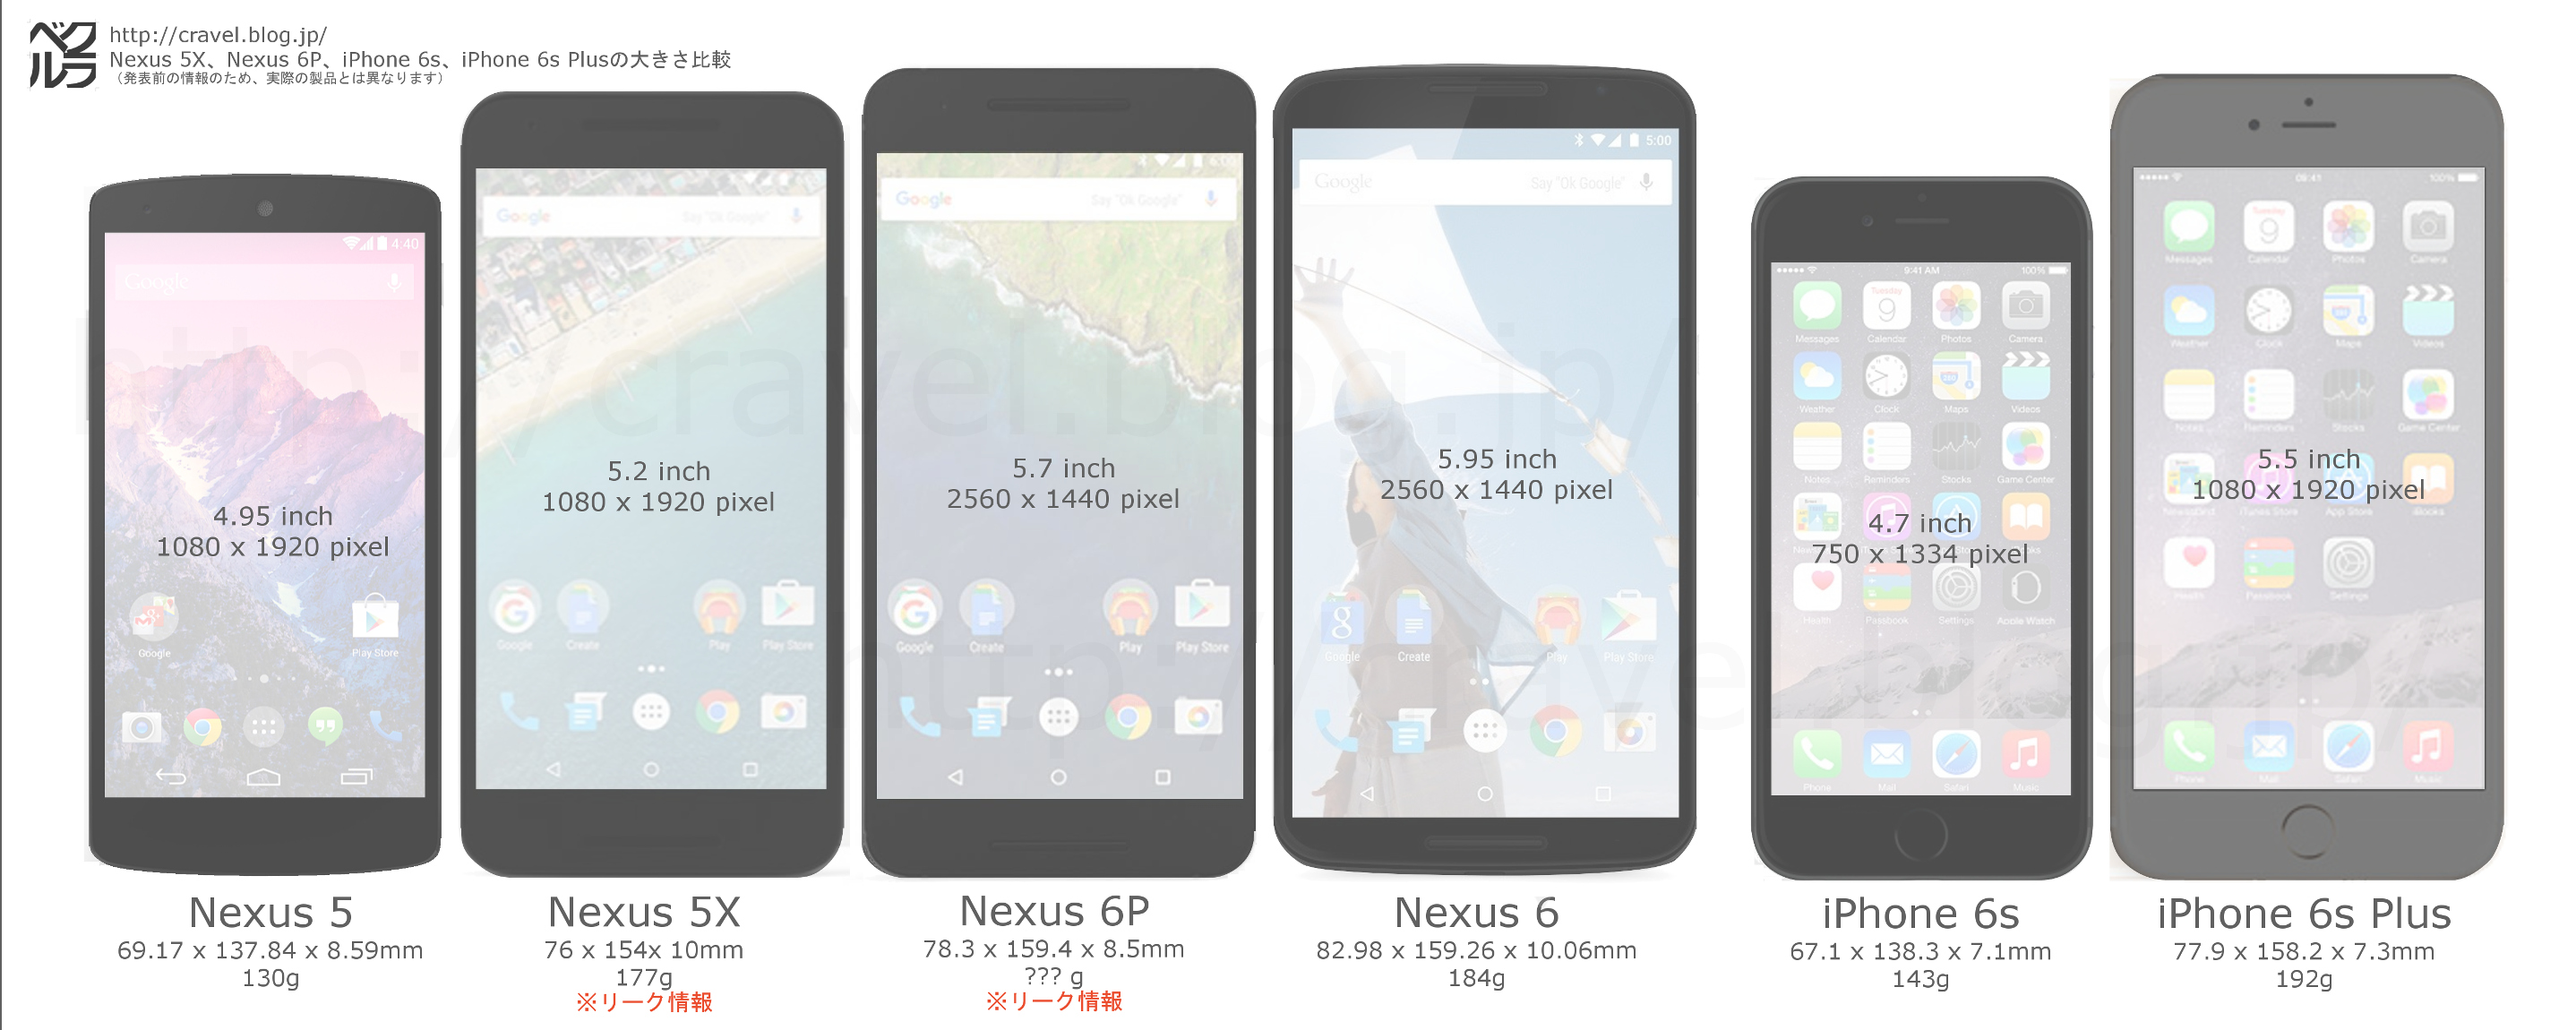 新型iphone 6s と Iphone 6s Plus と Nexus5x と Nexus6p の大きさ比較画像 モバイル スマホ ガジェット クラベル